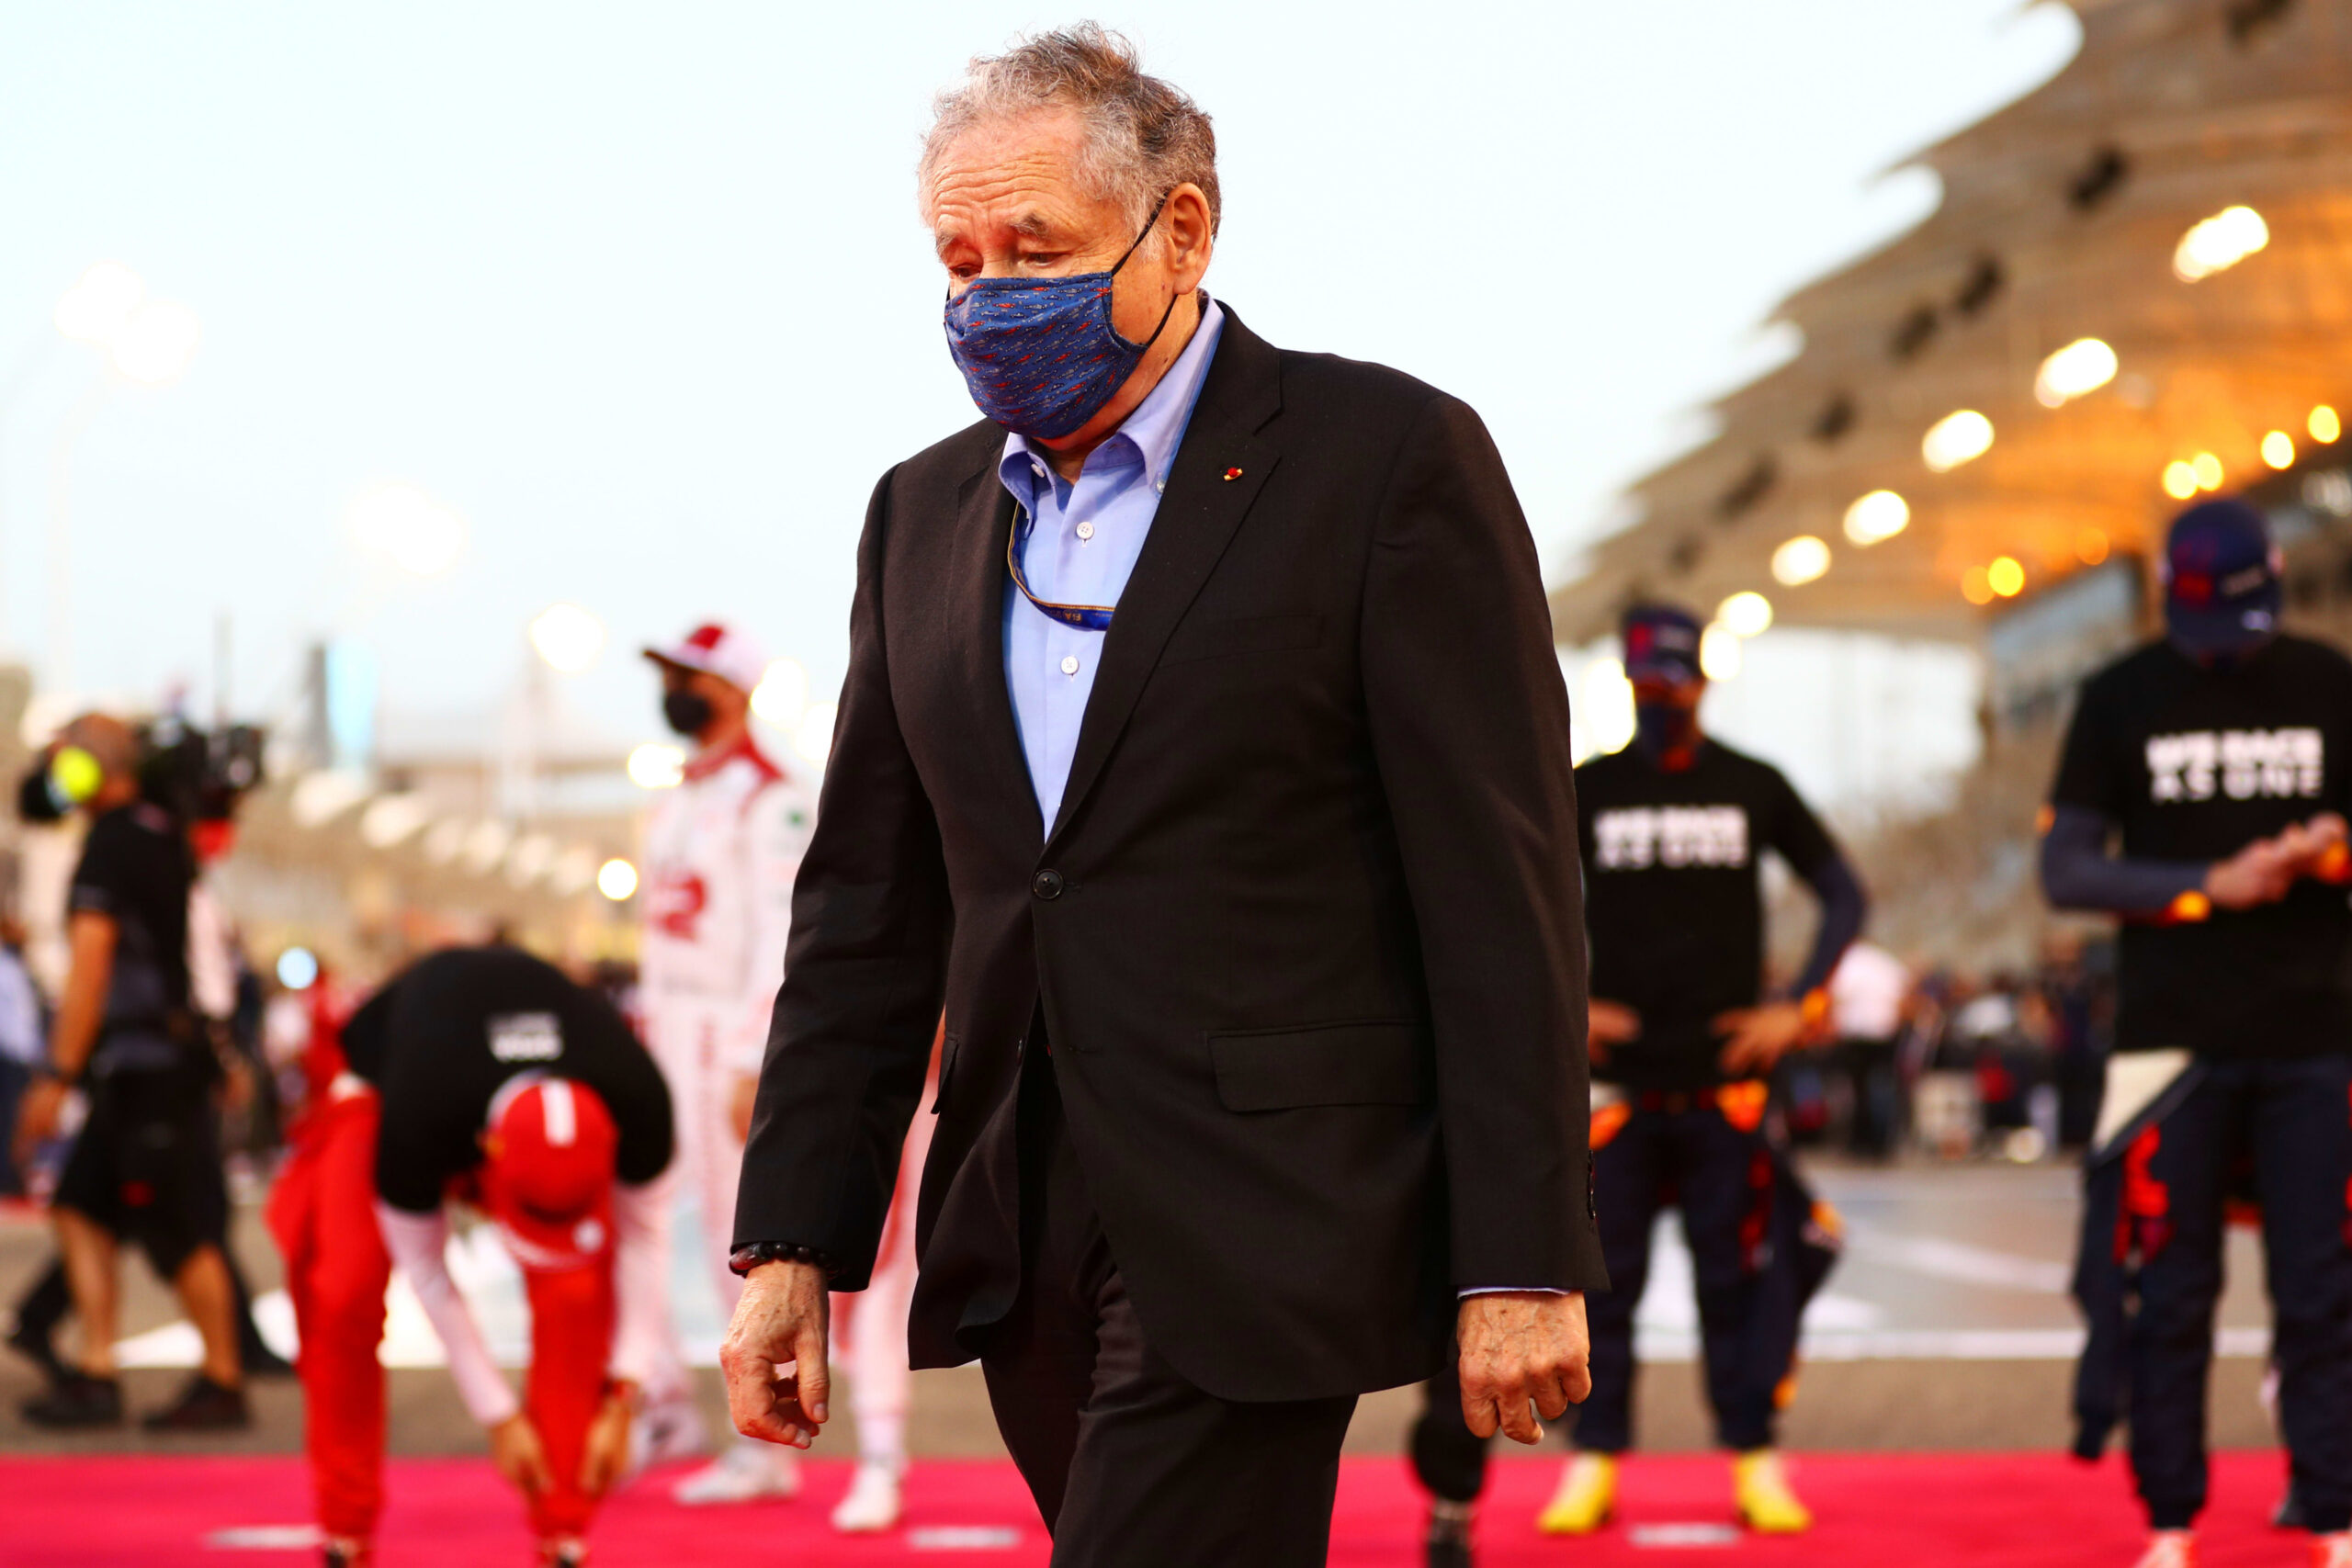 F1 shouldn’t get involved in politics, FIA boss says before Saudi Grand Prix